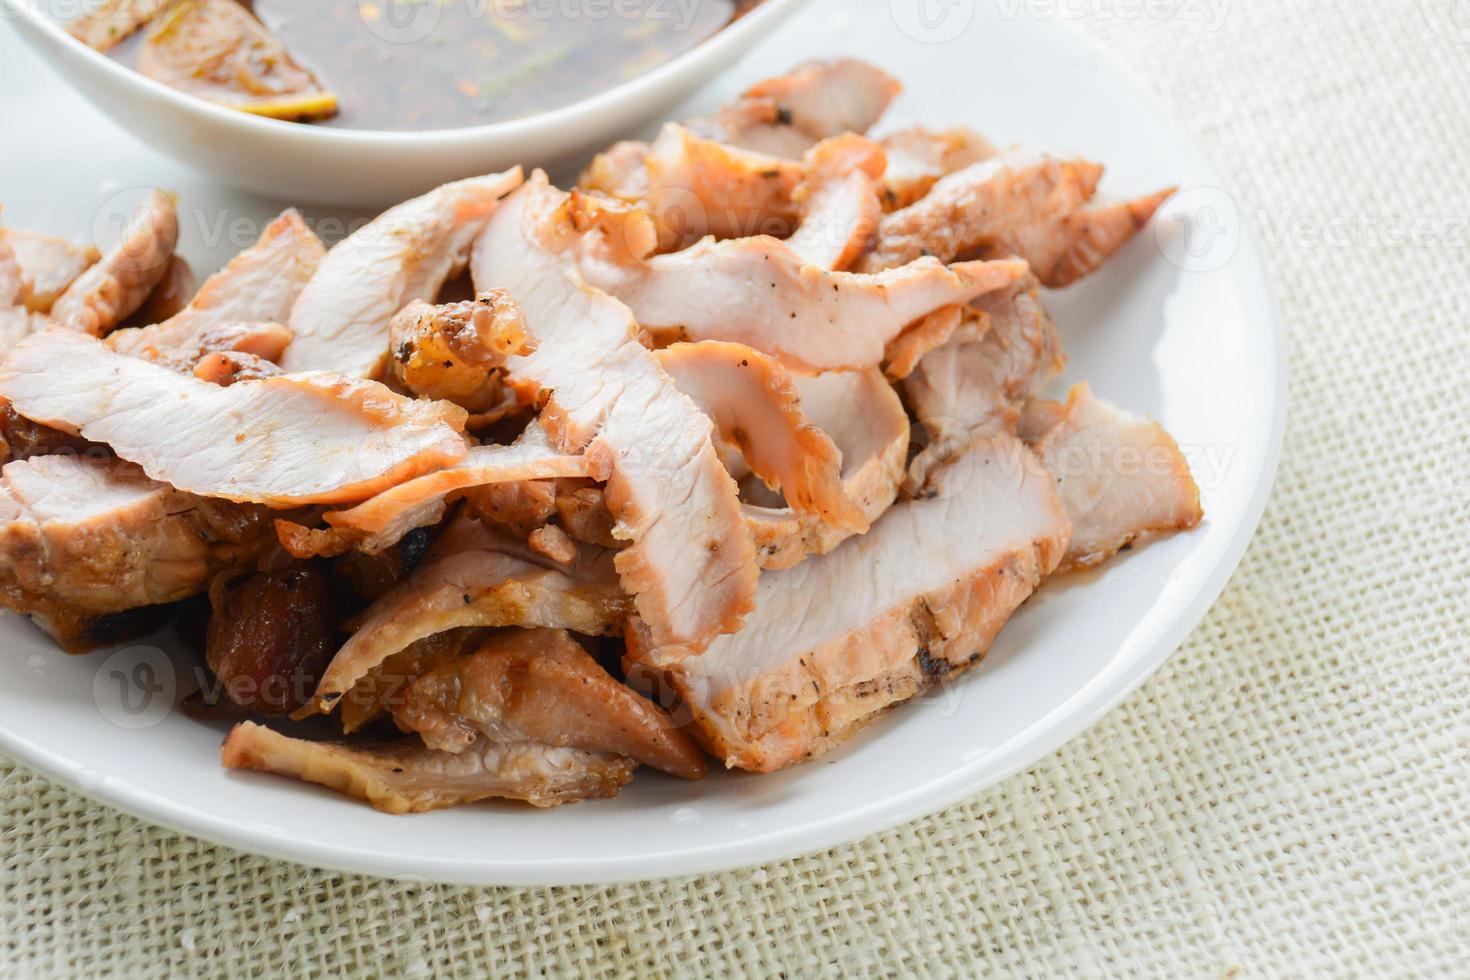 carne de porco grelhada com molho picante tailandês. pode ser servido como aperitivo. foto